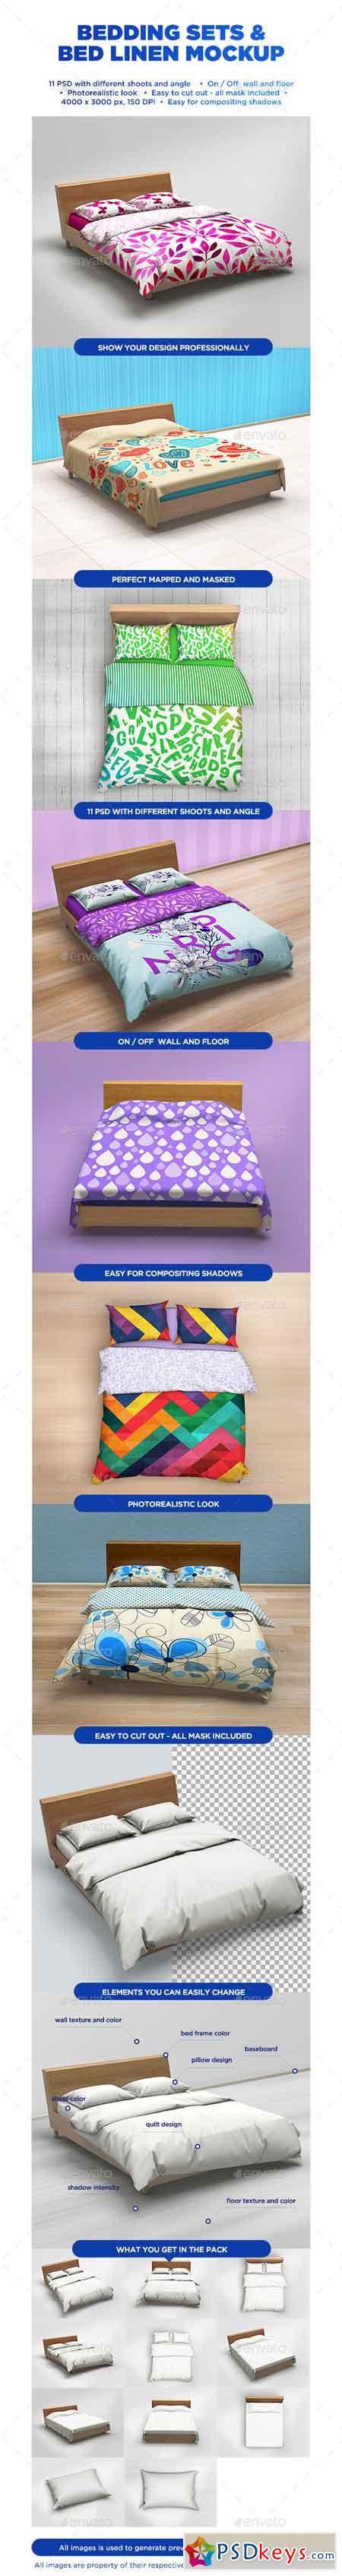 Bedding Sets & Bed Linen Mockup 12018429